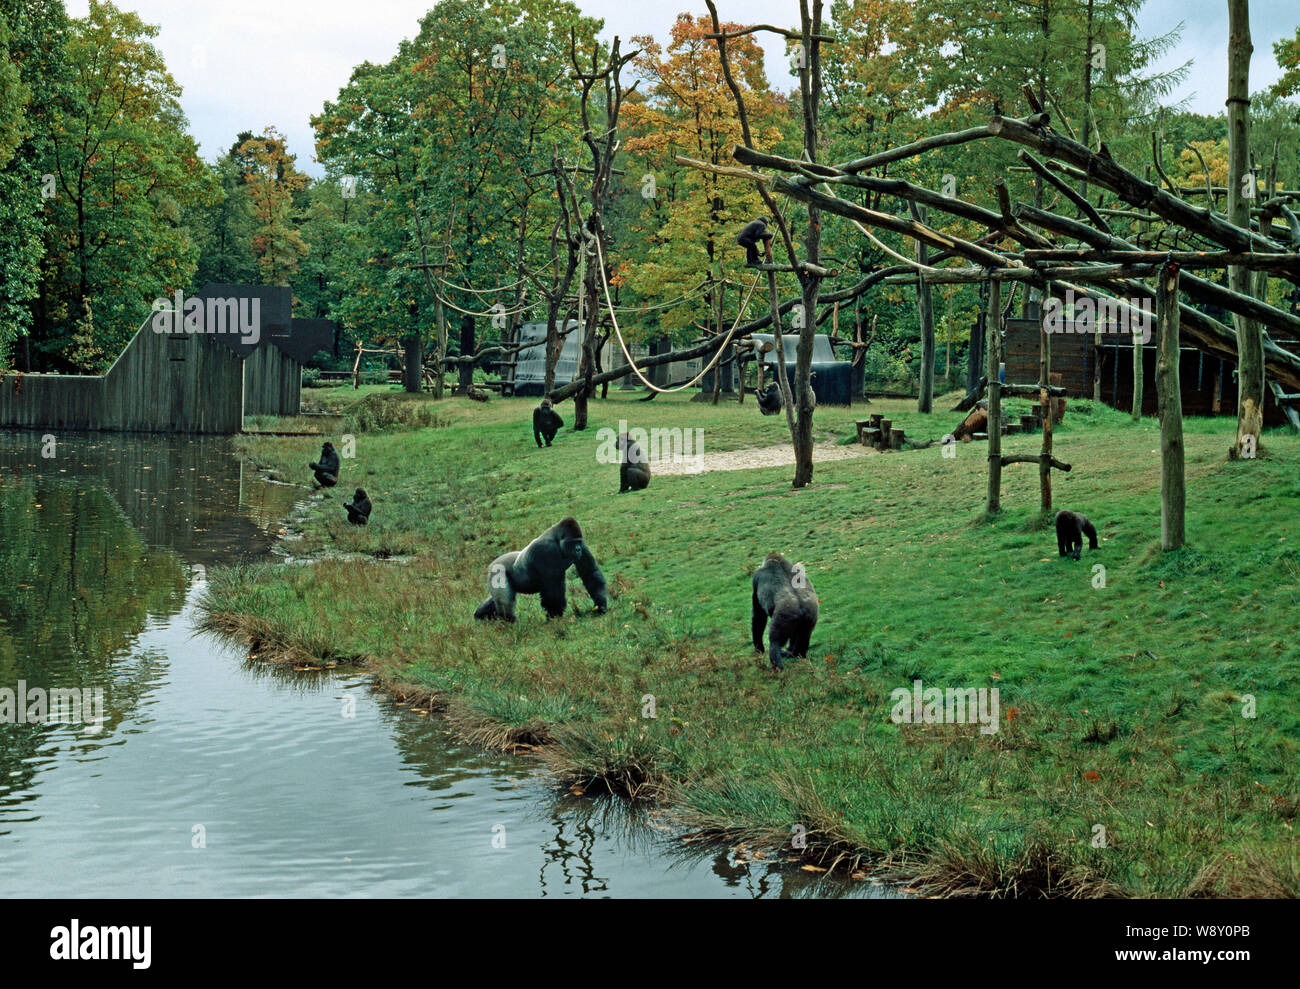 GORILLA GEHÄUSE IM NIEDERLÄNDISCHEN ZOO Gutes, modernes Design, einschließlich ökologische Bereicherung. Apenheul, Apeldorn Primas Zoo, Holland Stockfoto